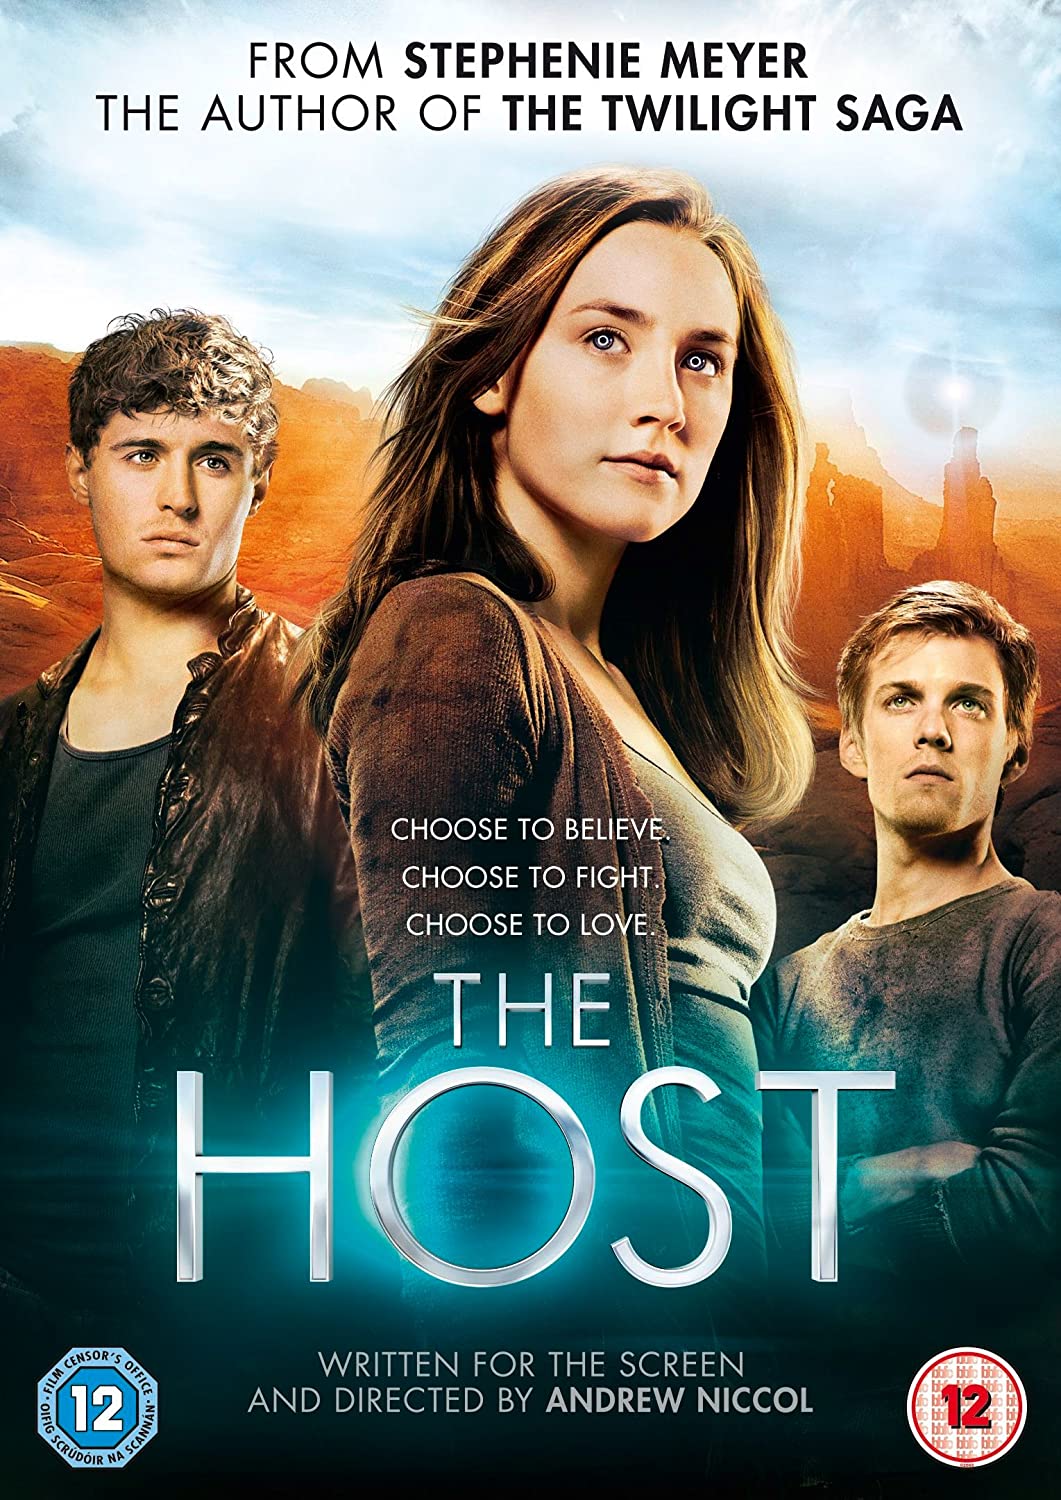 The Host - Horror/Action [DVD]